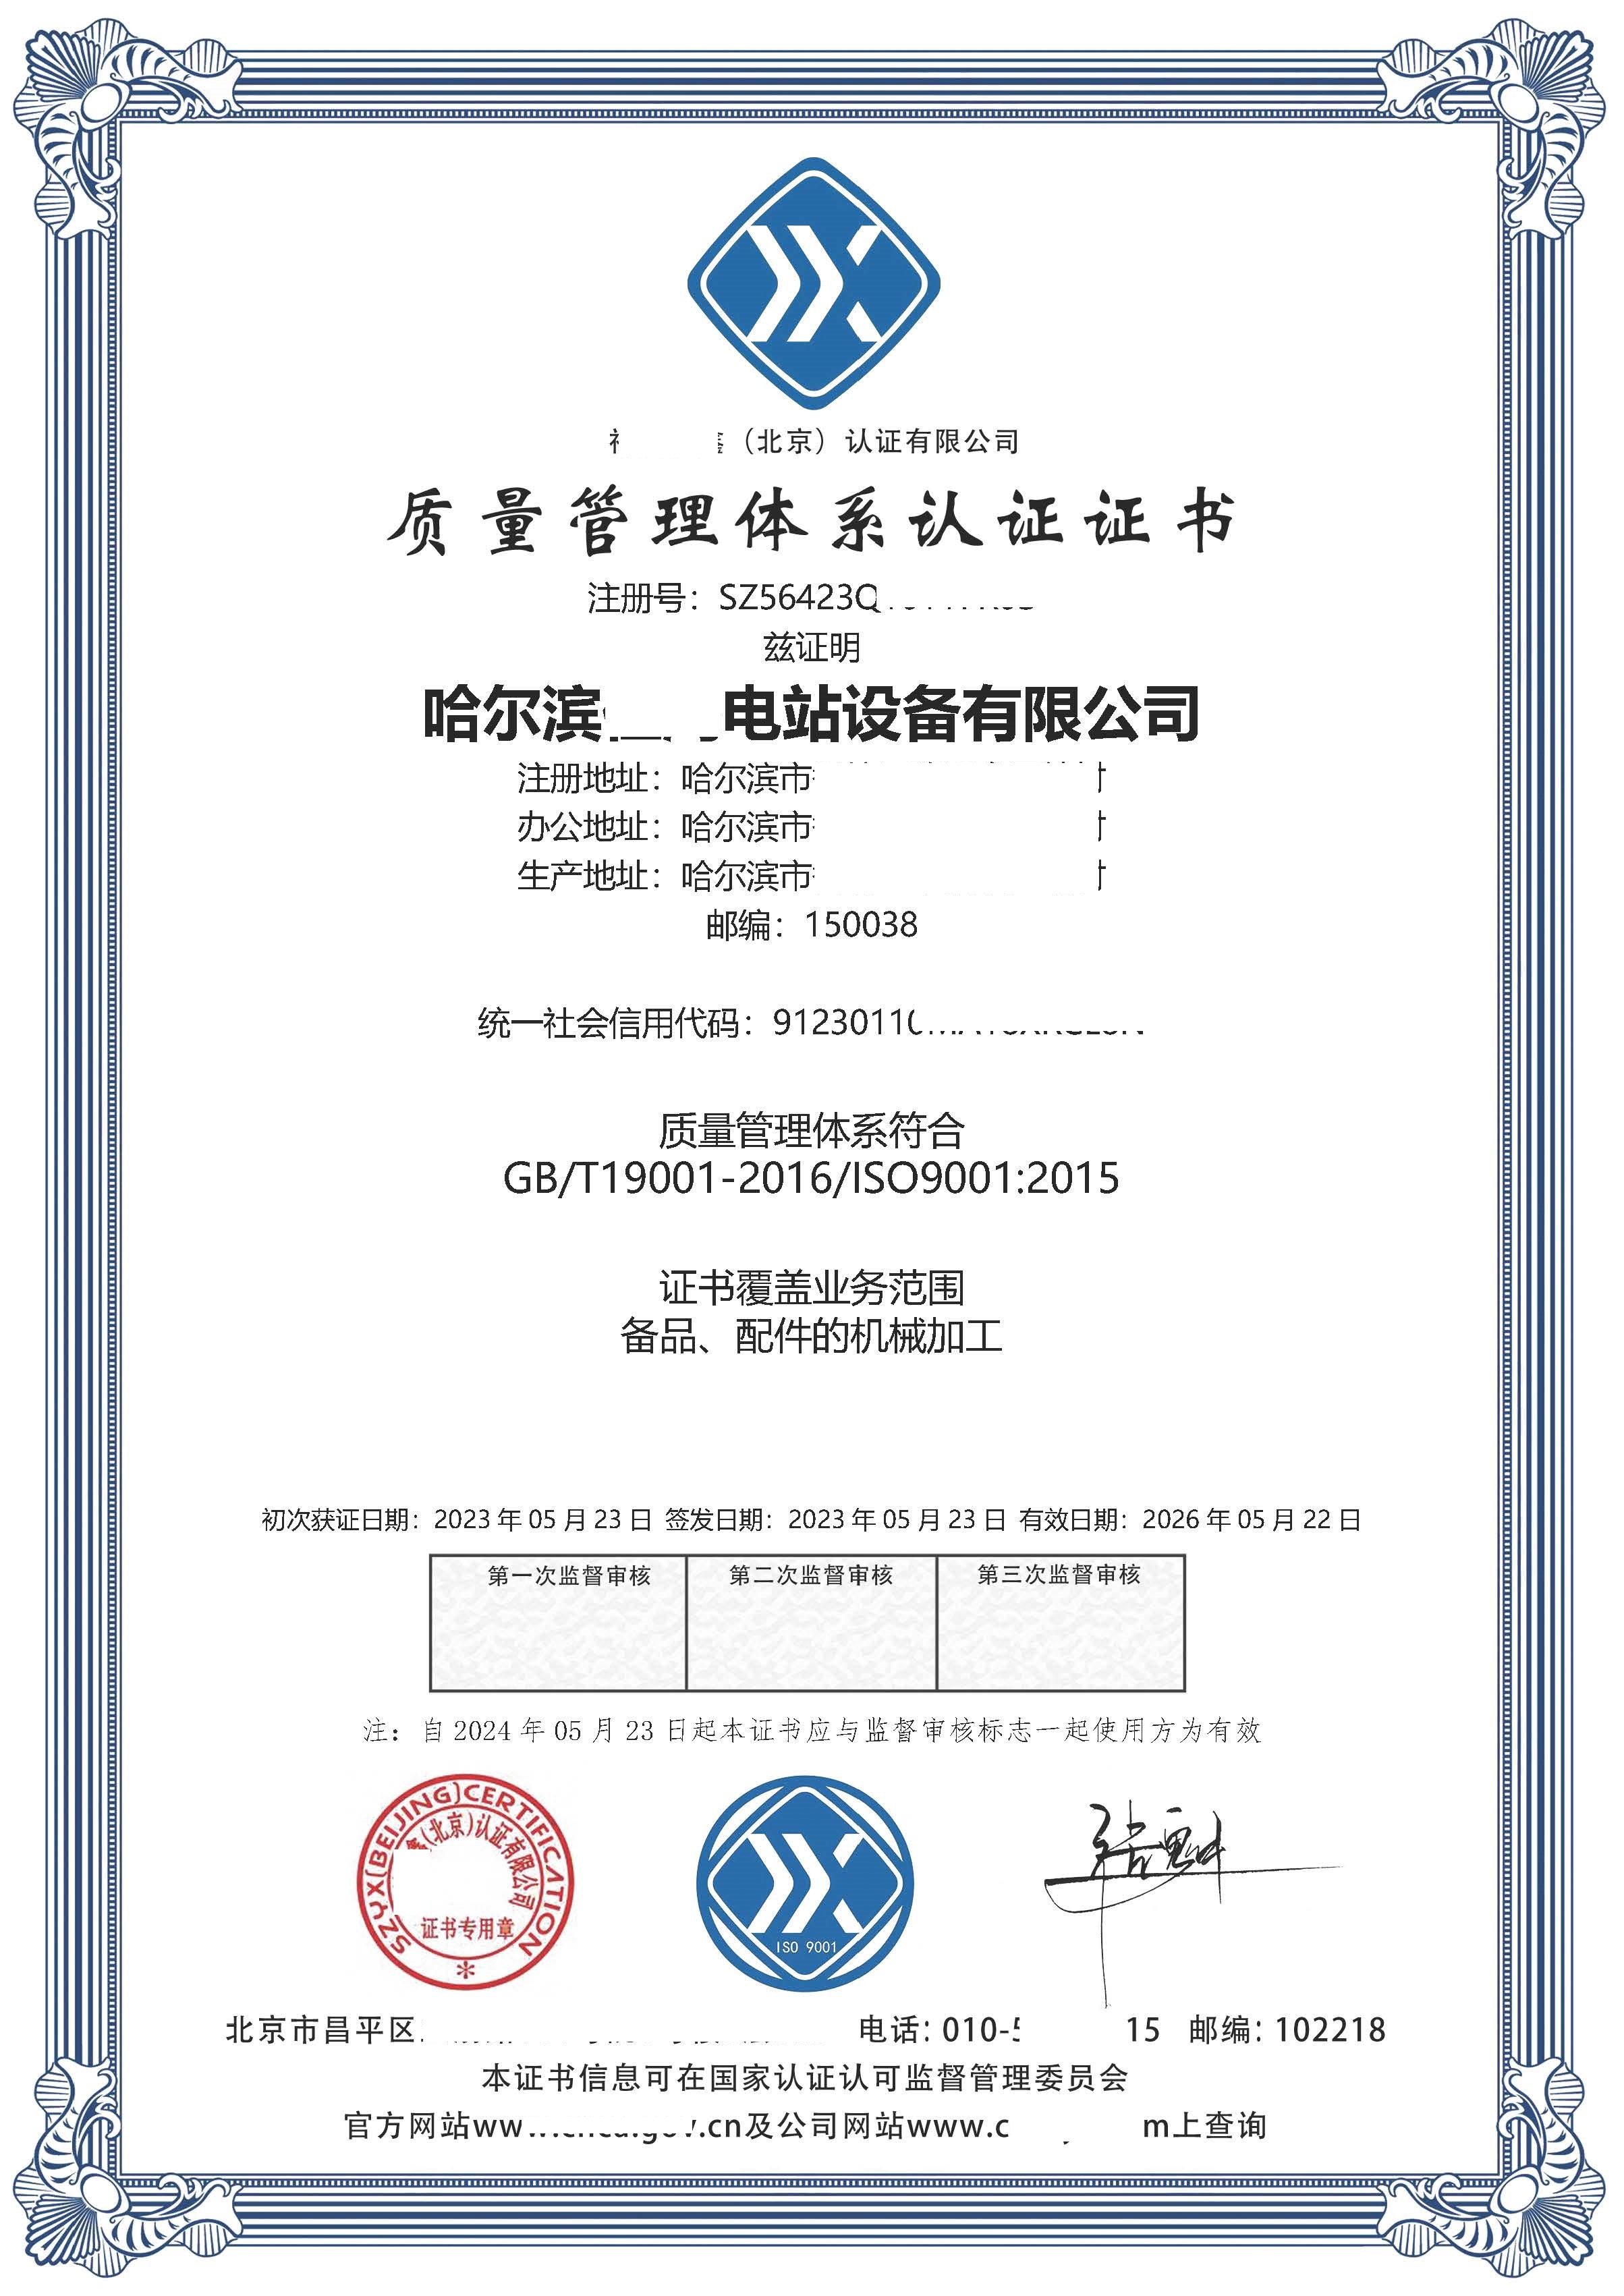 恭喜哈尔滨**电站设备有限公司获得质量管理体系咨询证书